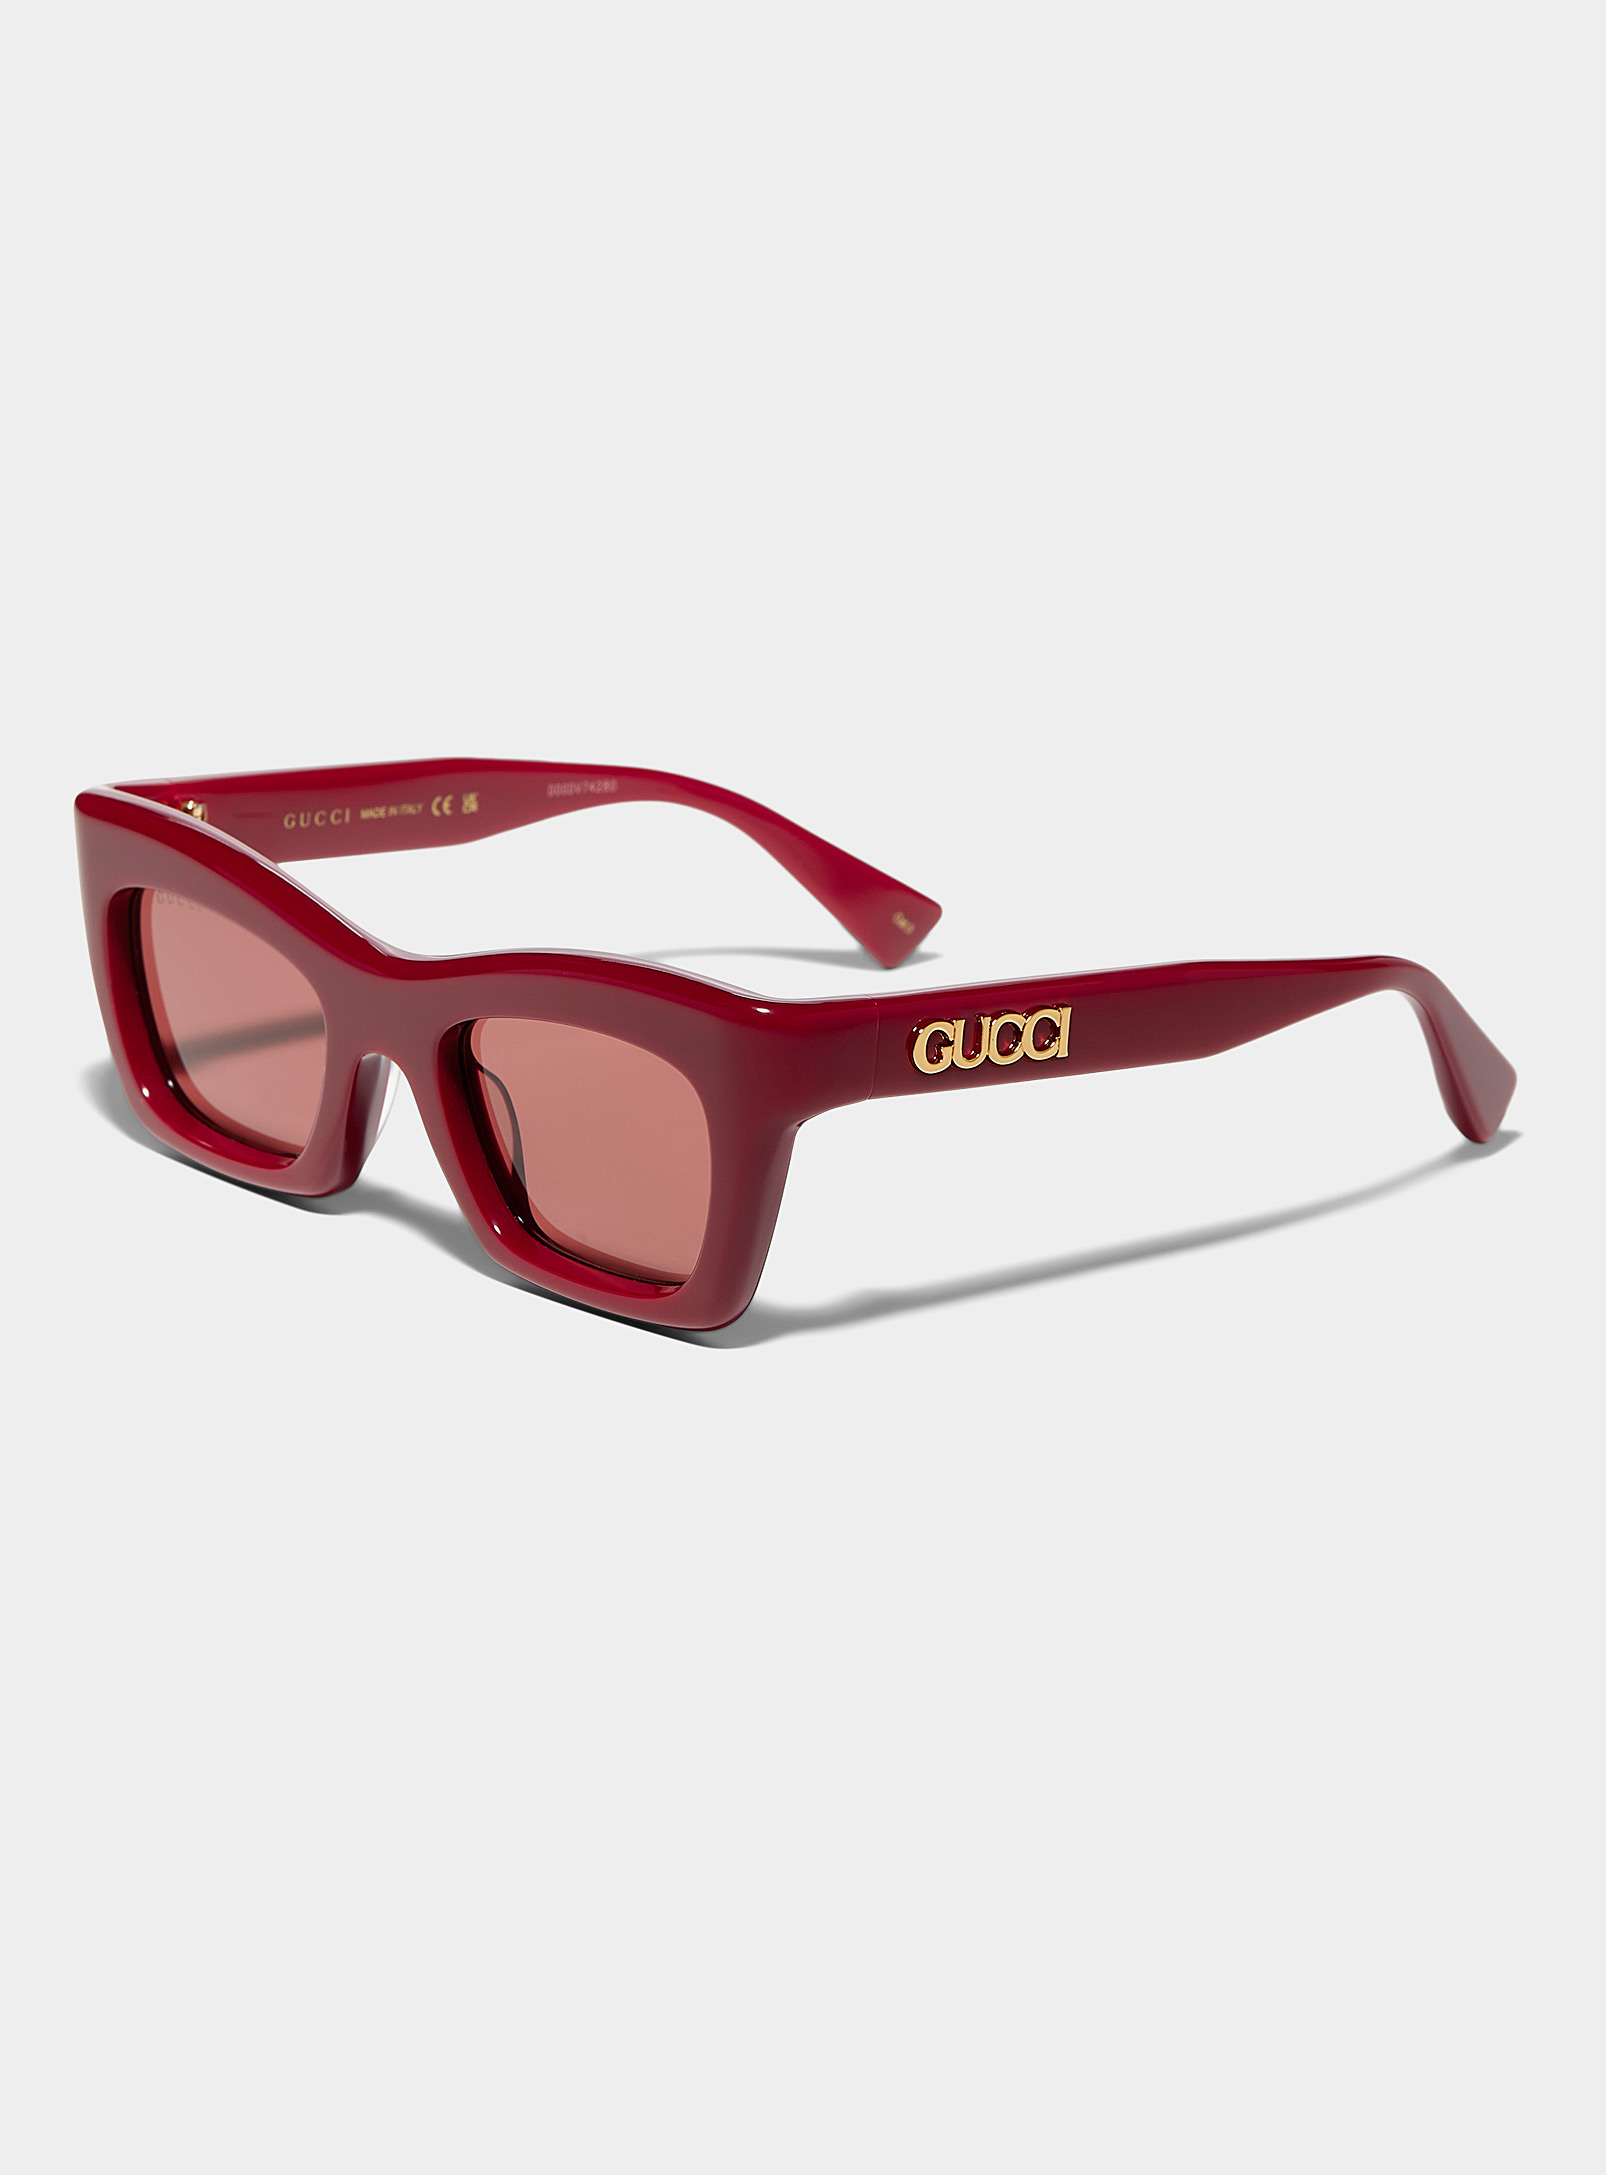 Gucci - Les lunettes de soleil oeil de chat bordeaux